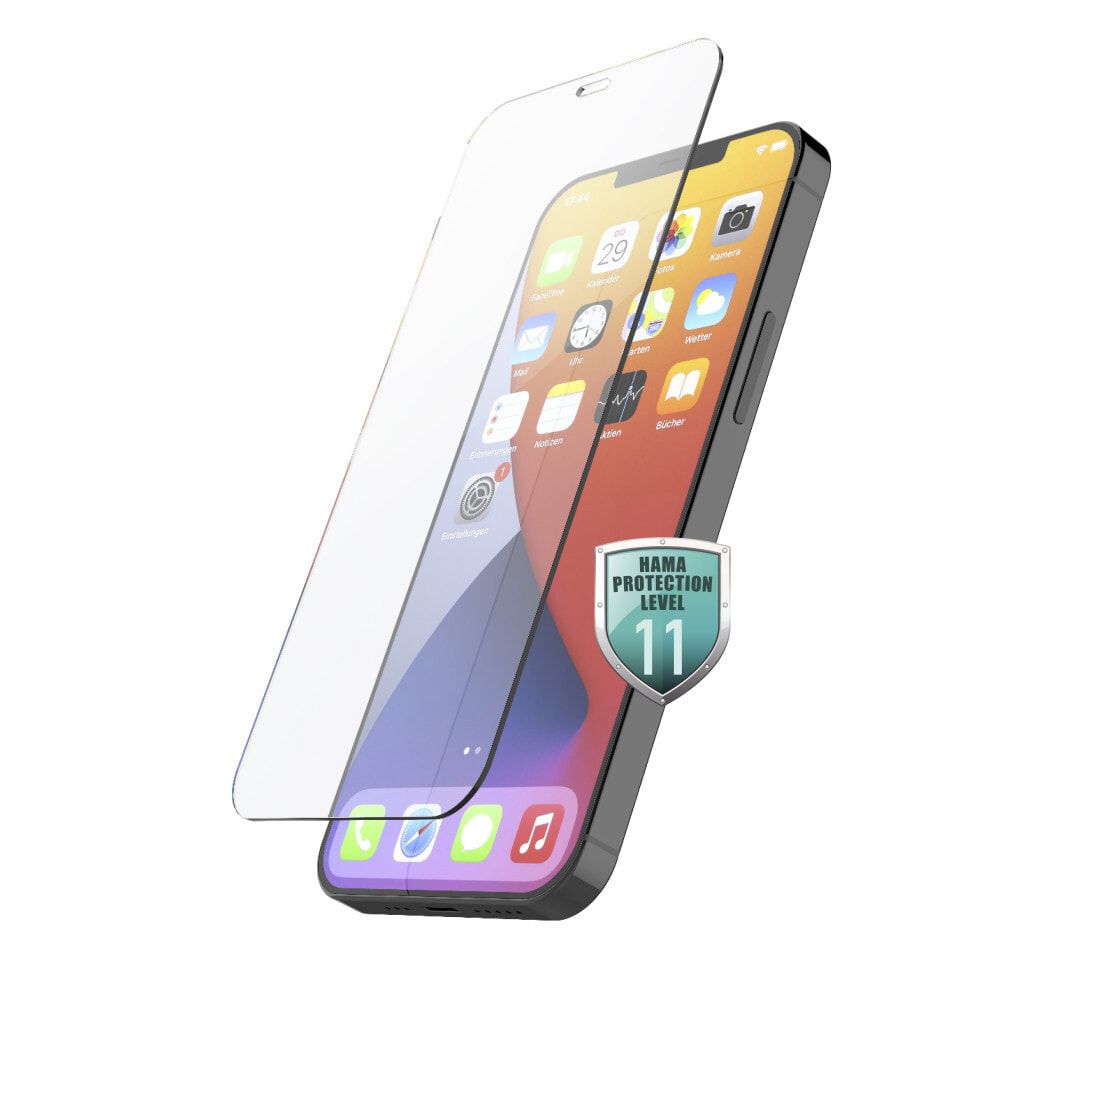 Hama 00213010 защитная пленка / стекло для мобильного телефона Прозрачная защитная пленка Apple 1 шт